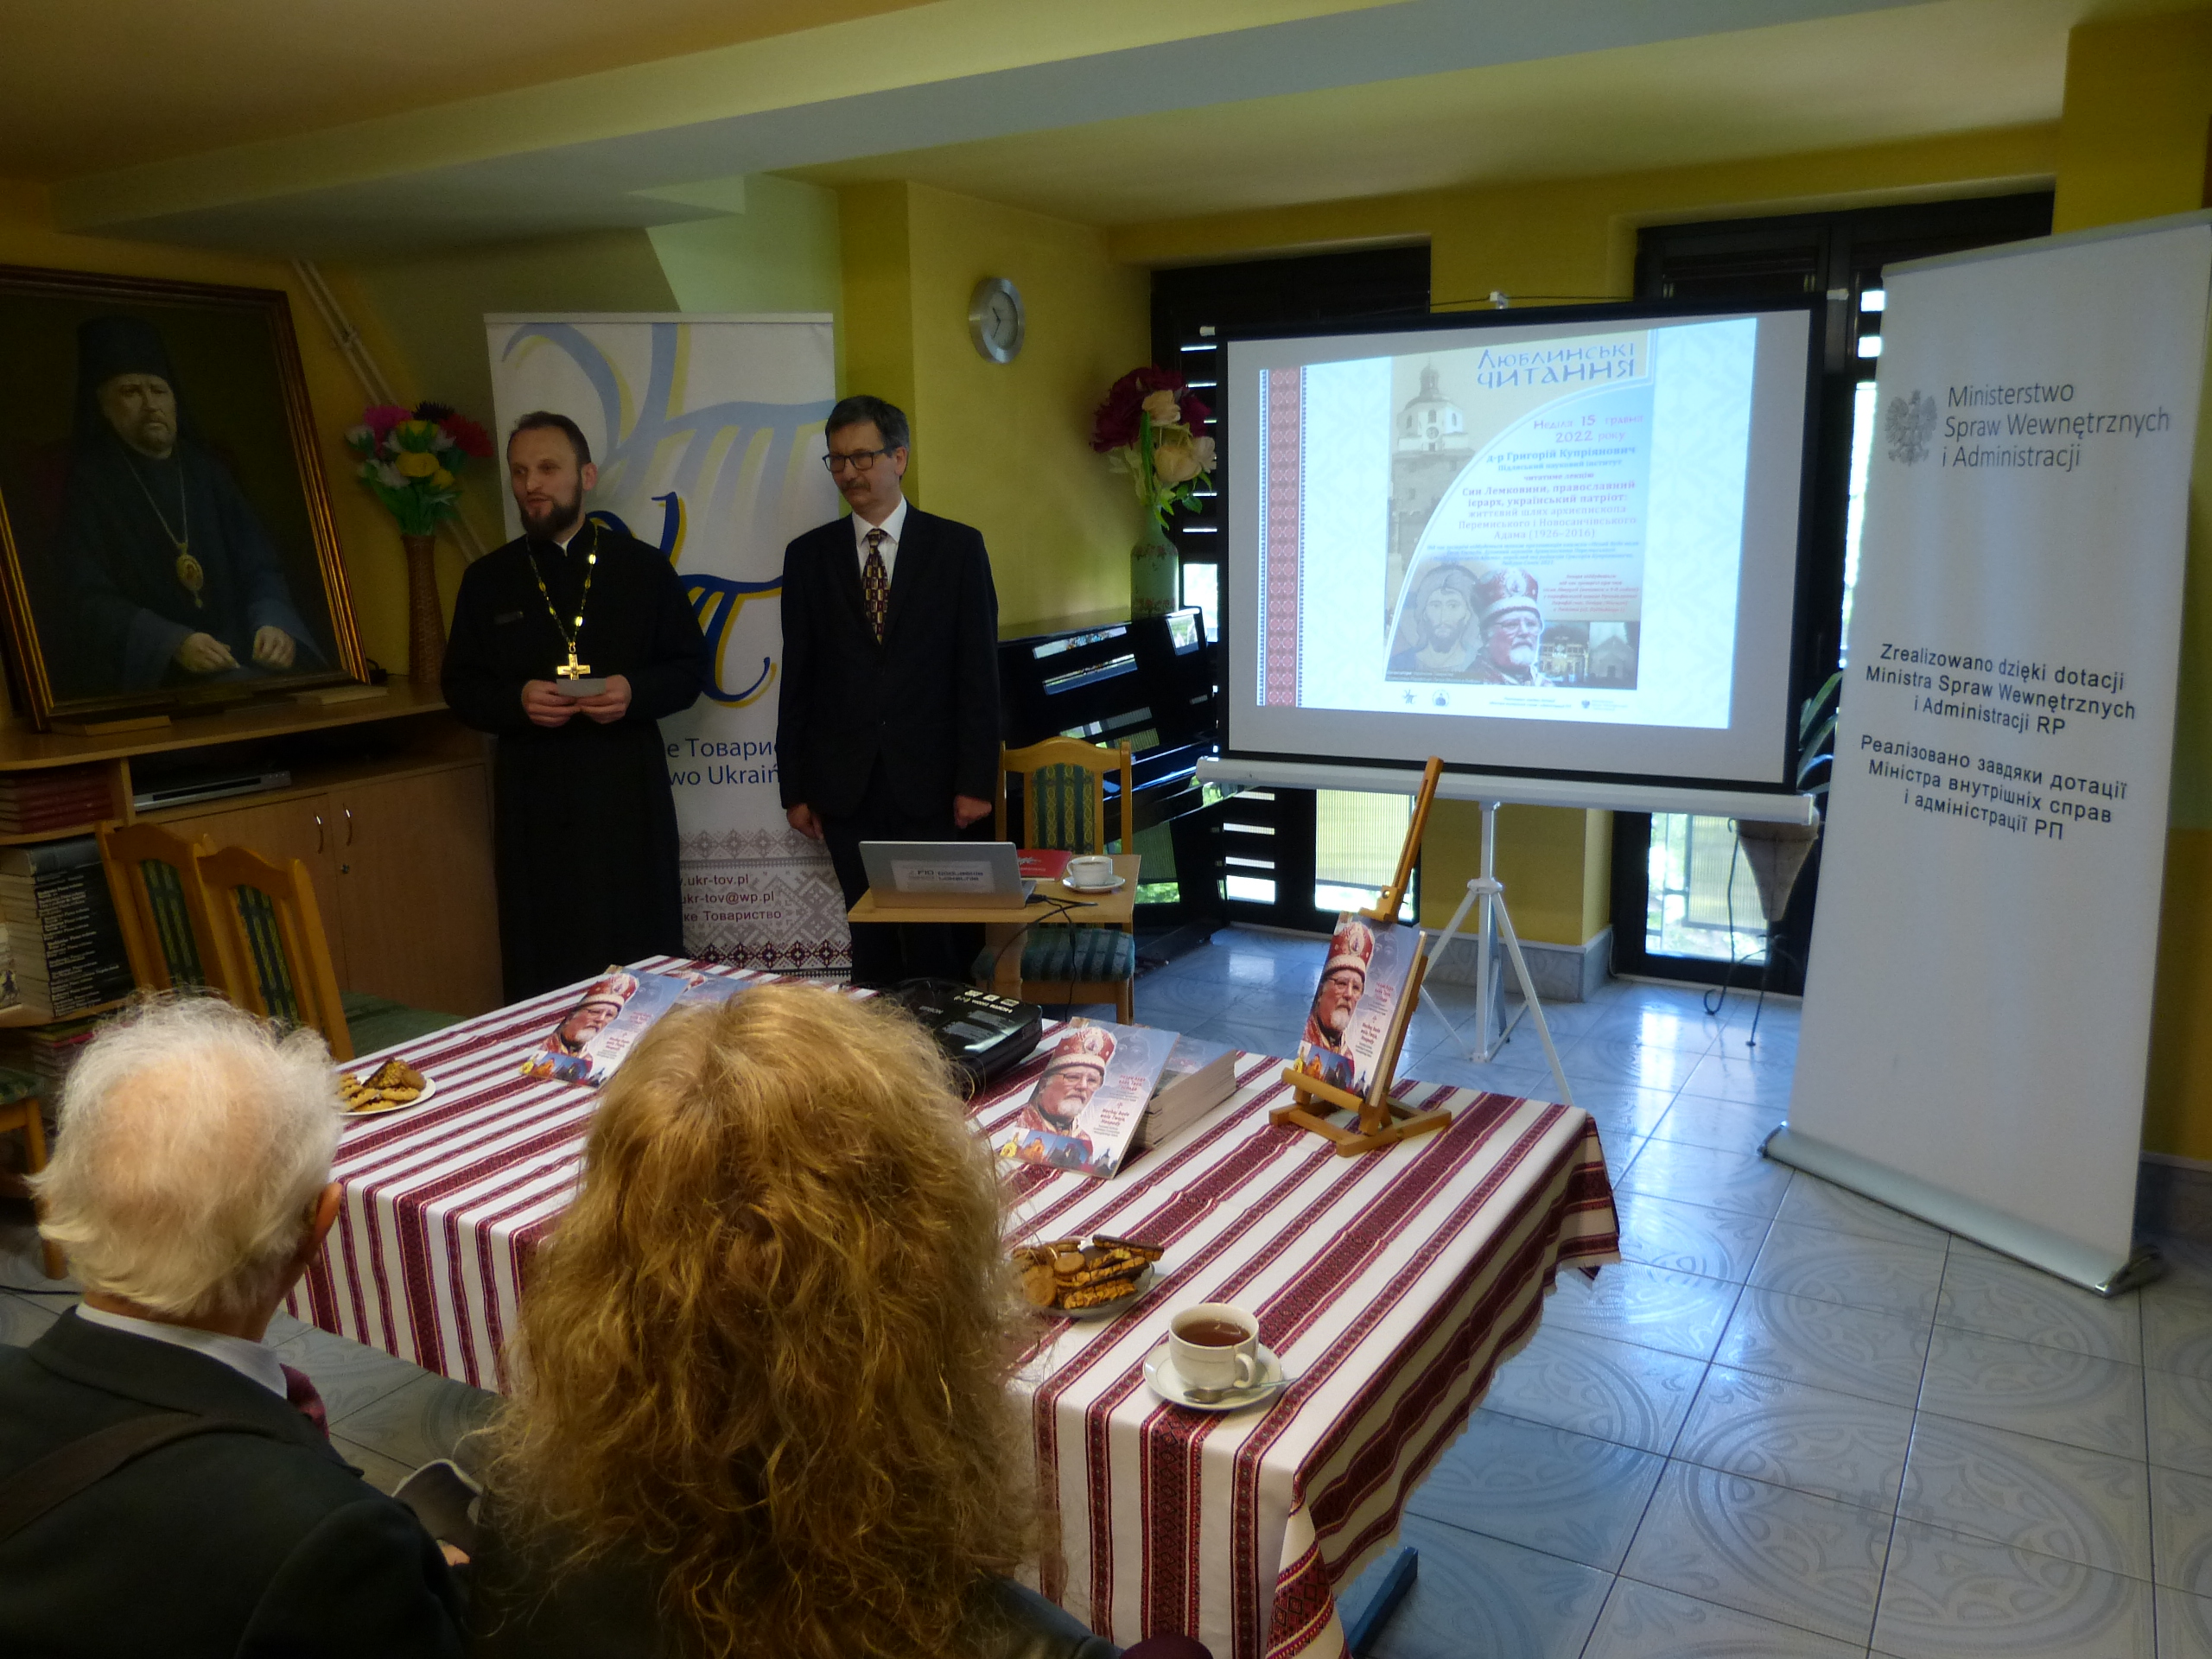 Директор ПНІ зачитав лекцію про архиєпископа Перемиського і Новосанчівського Адама